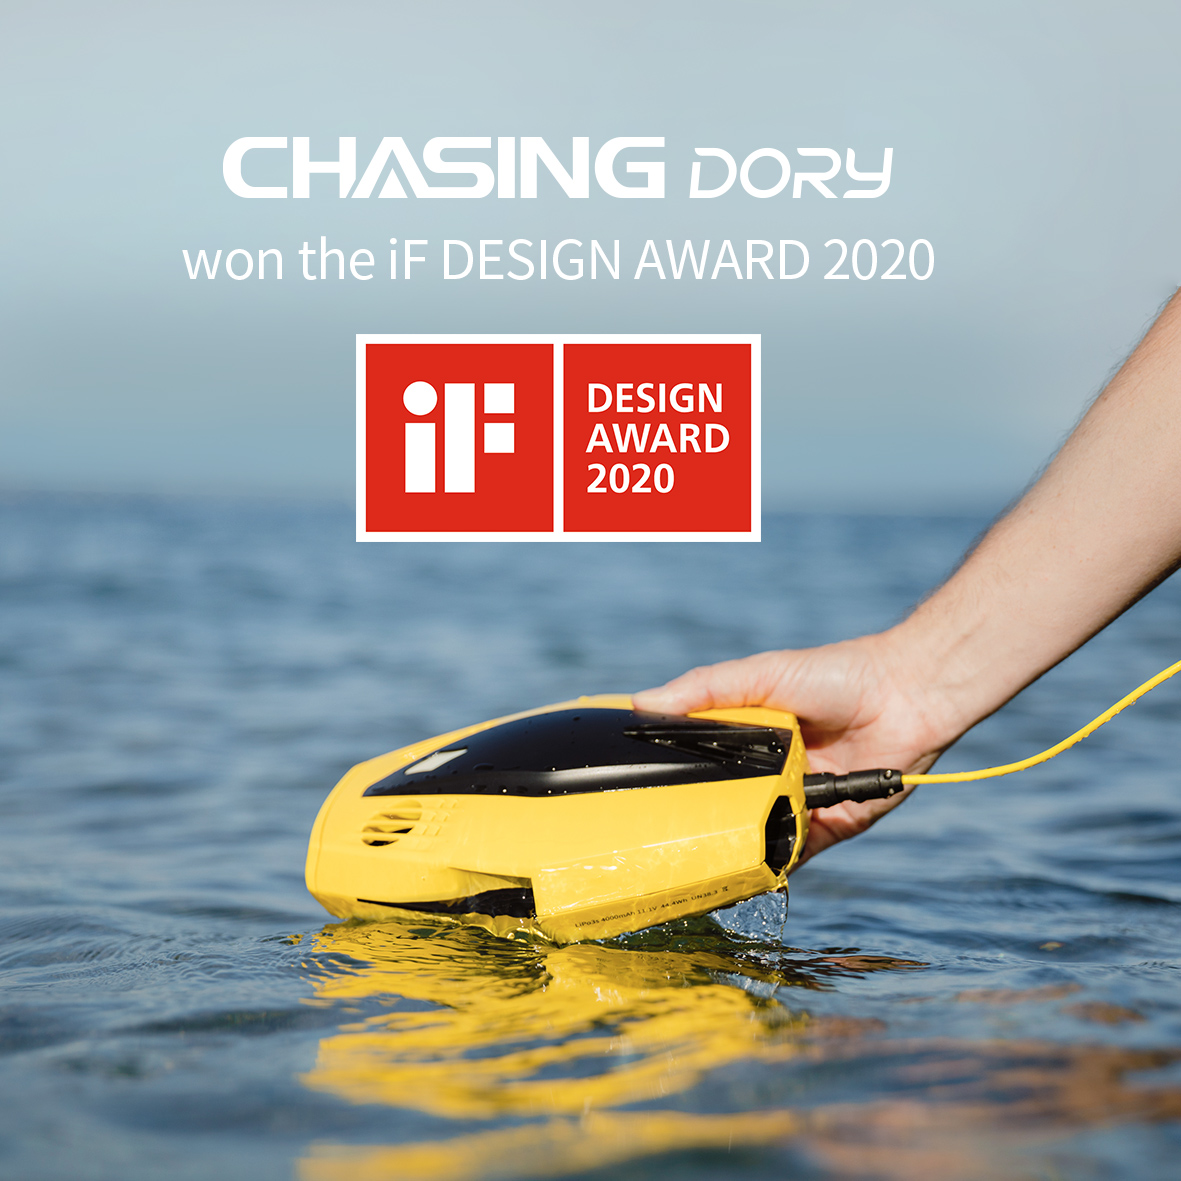 Onderwater drone Dory heeft de iF DESIGN AWARD 2020 gewonnen